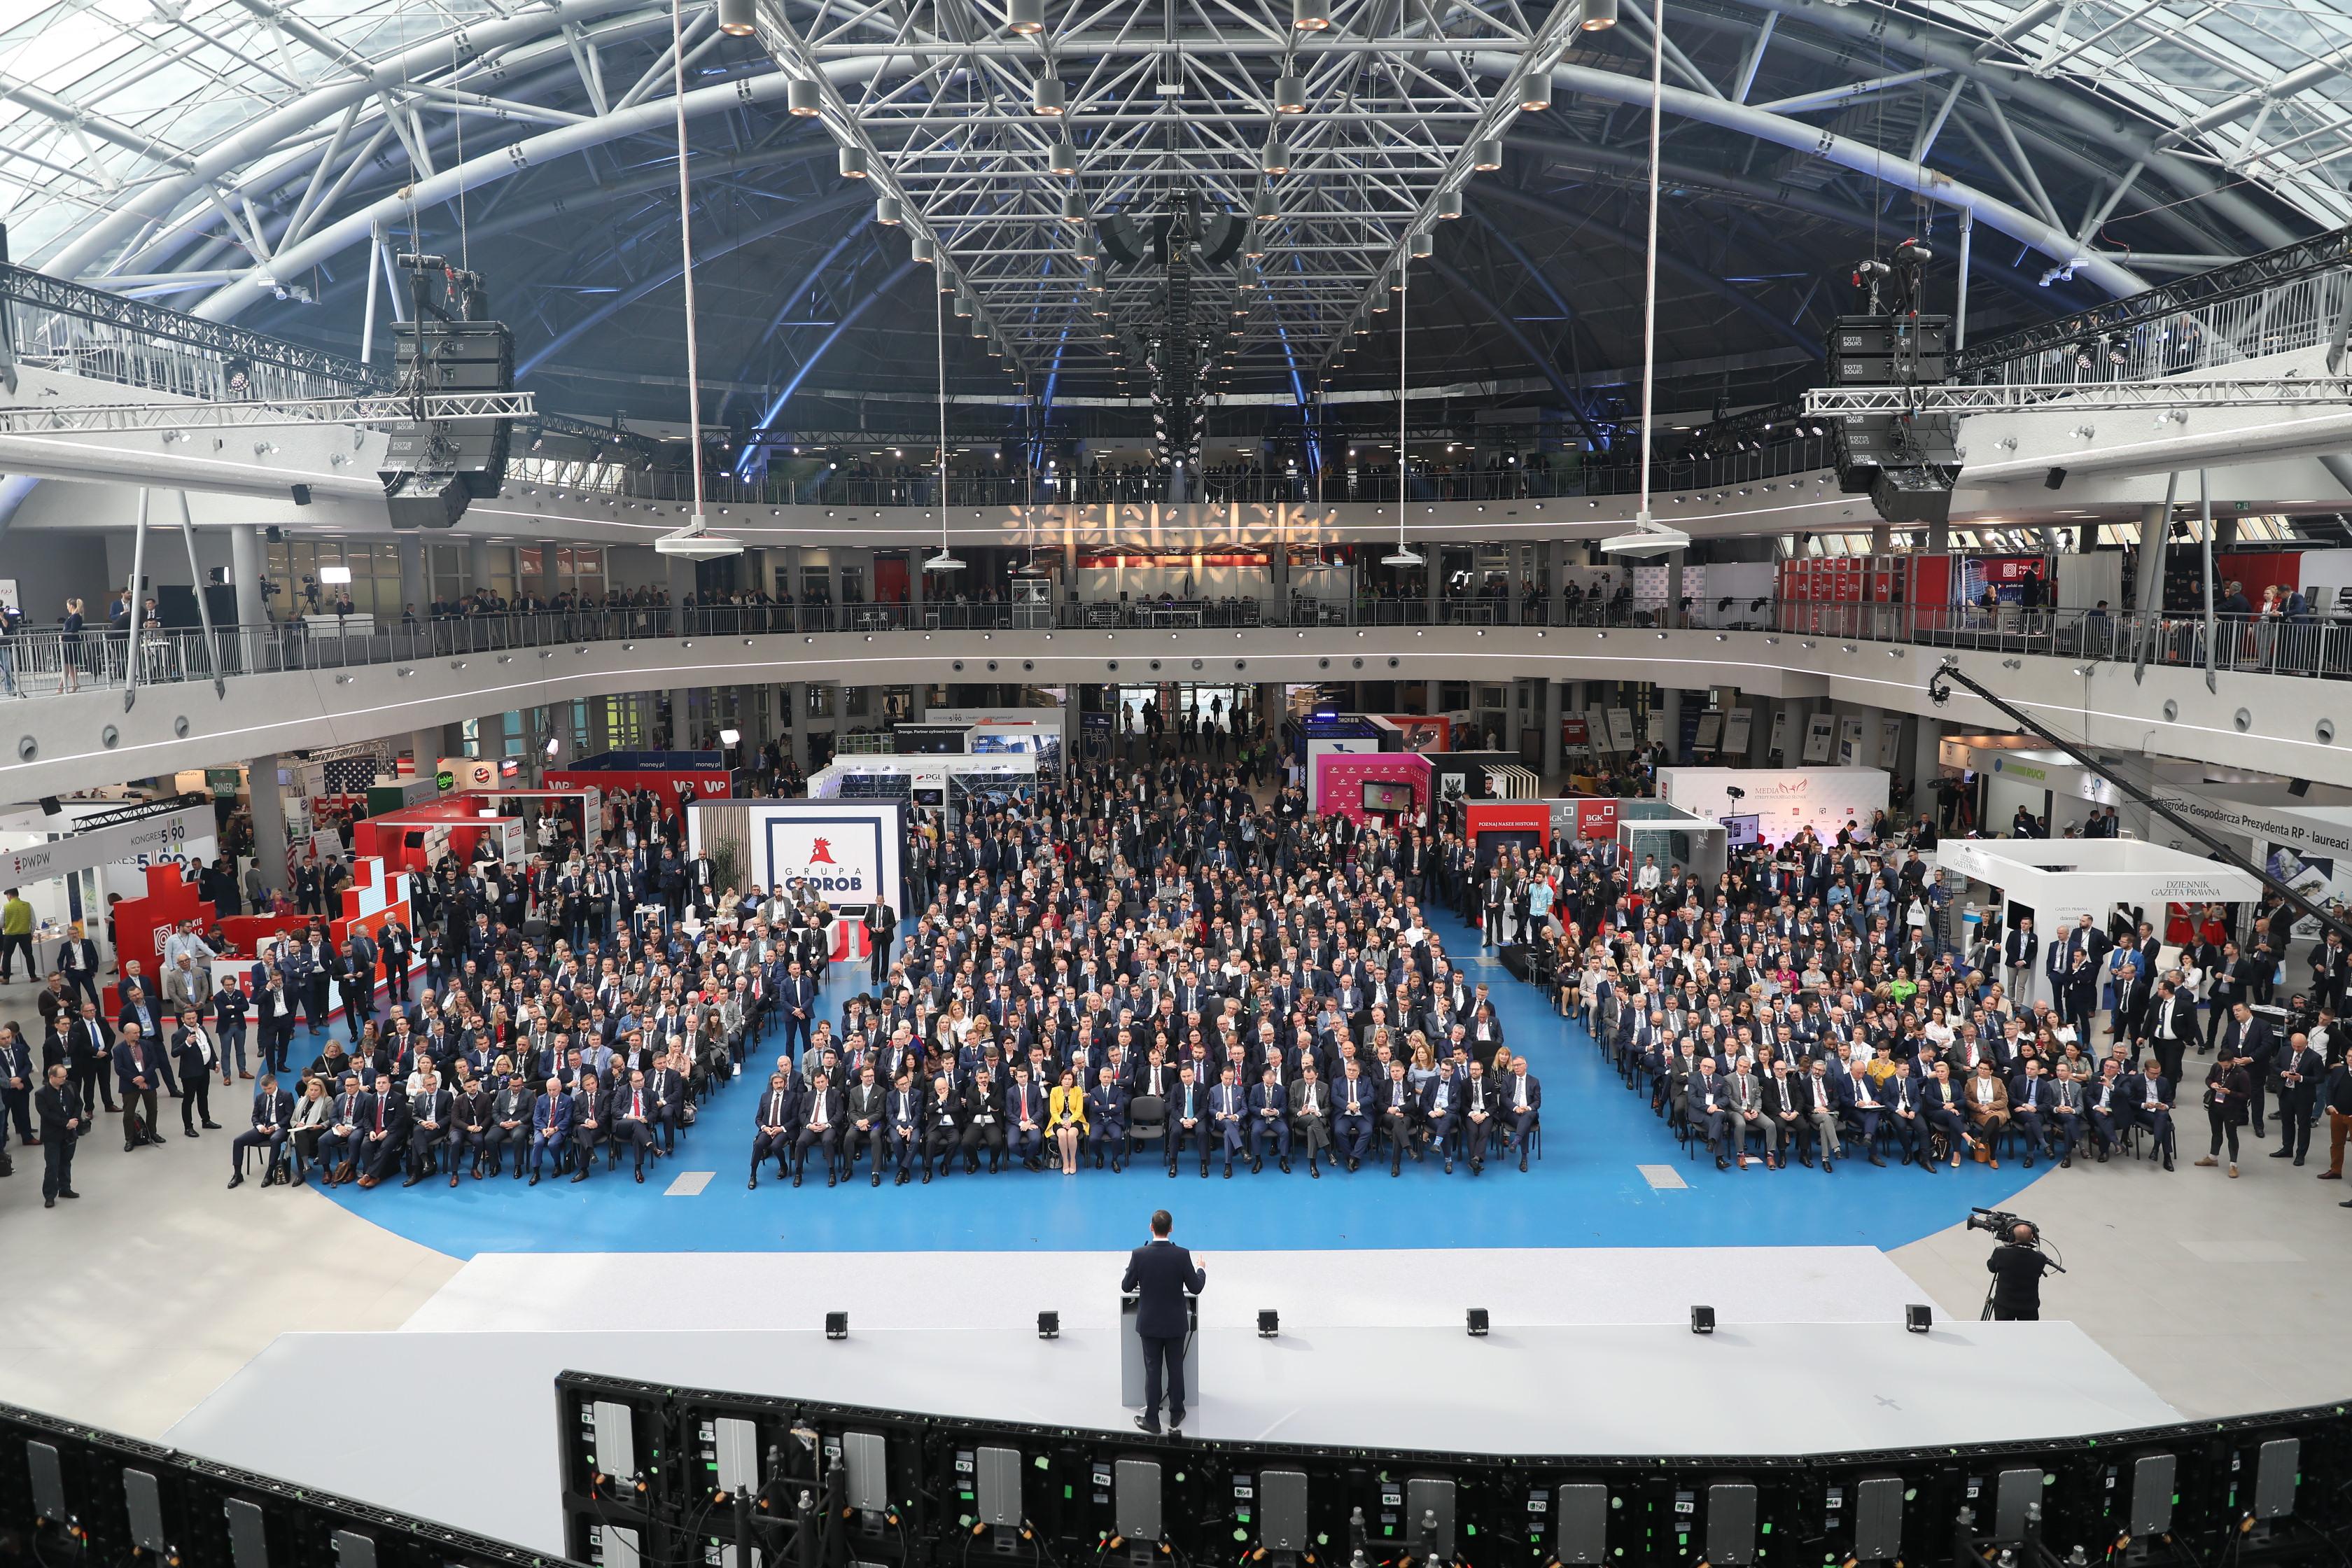 Premier Mateusz Morawiecki stoi przed tłumem ludzi zgromadzonych na kongresie 590.